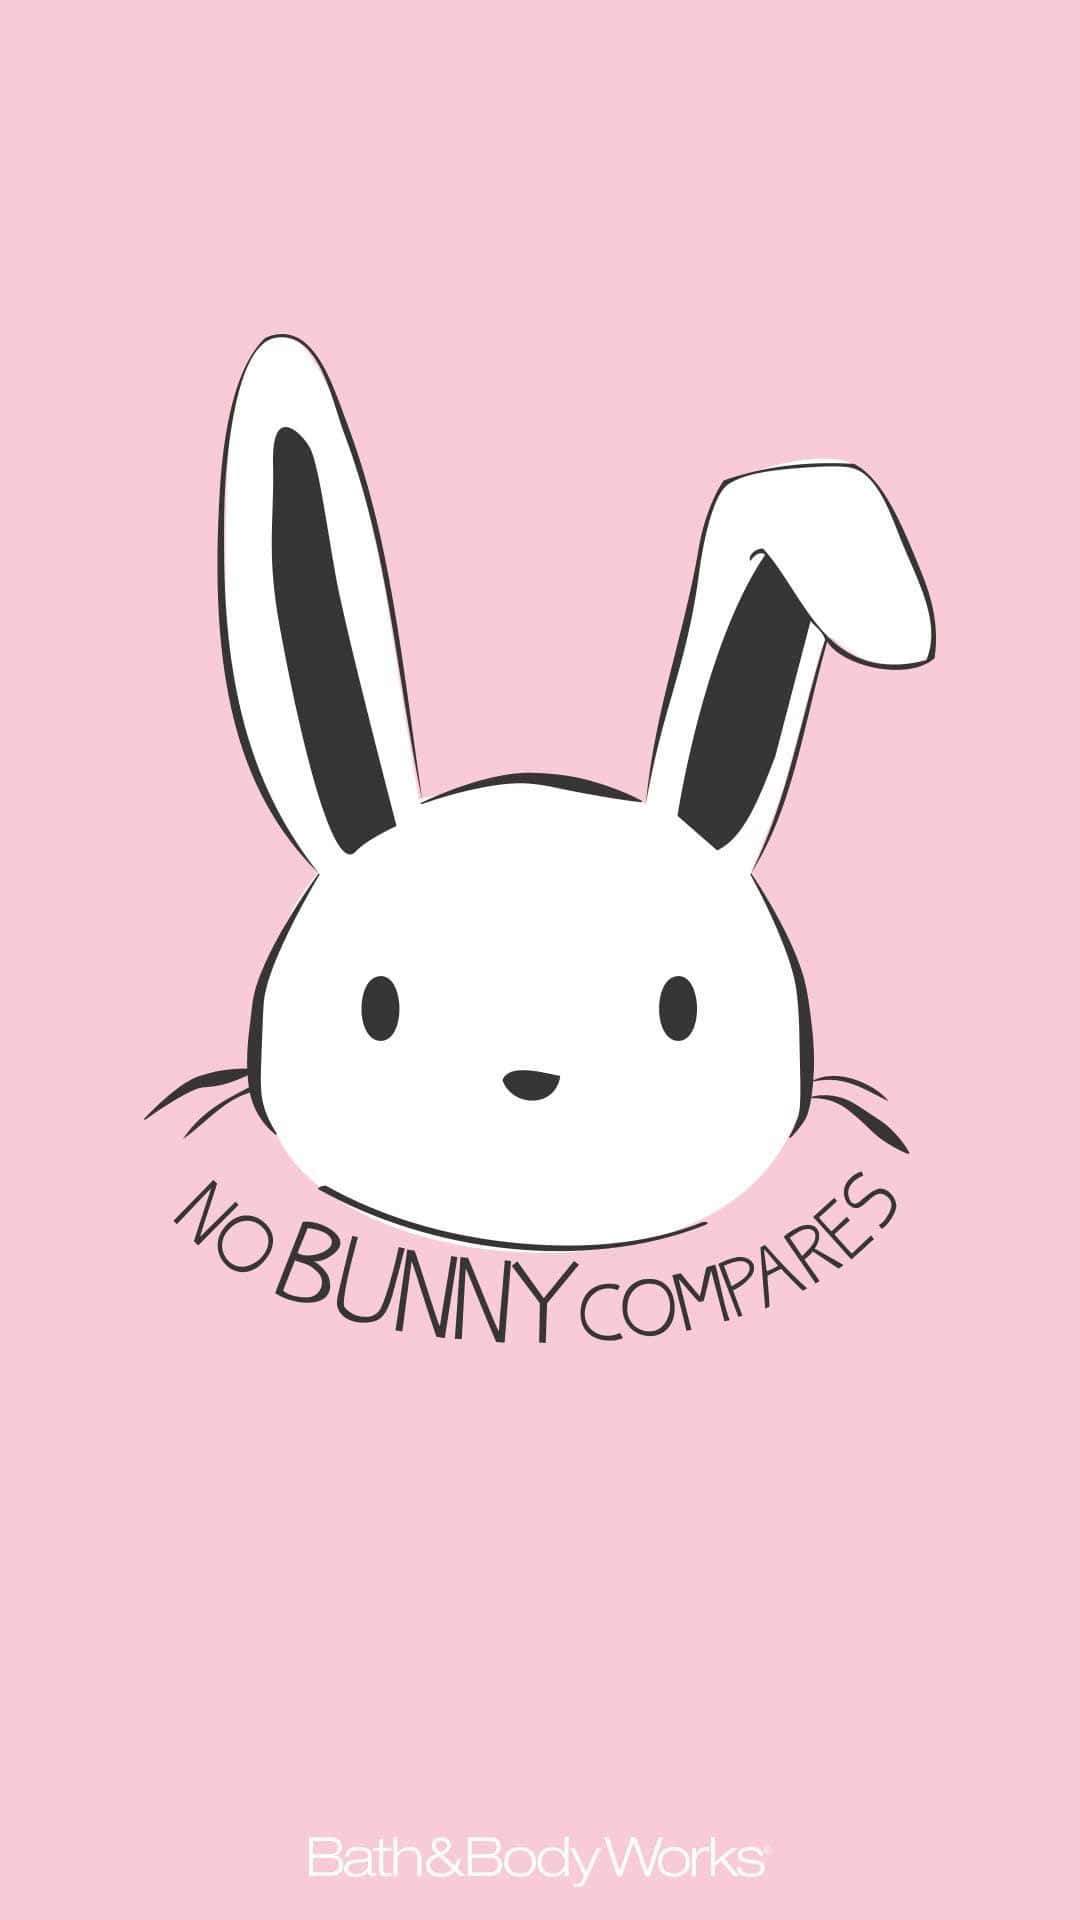 No Bunny Compares Wallpaper